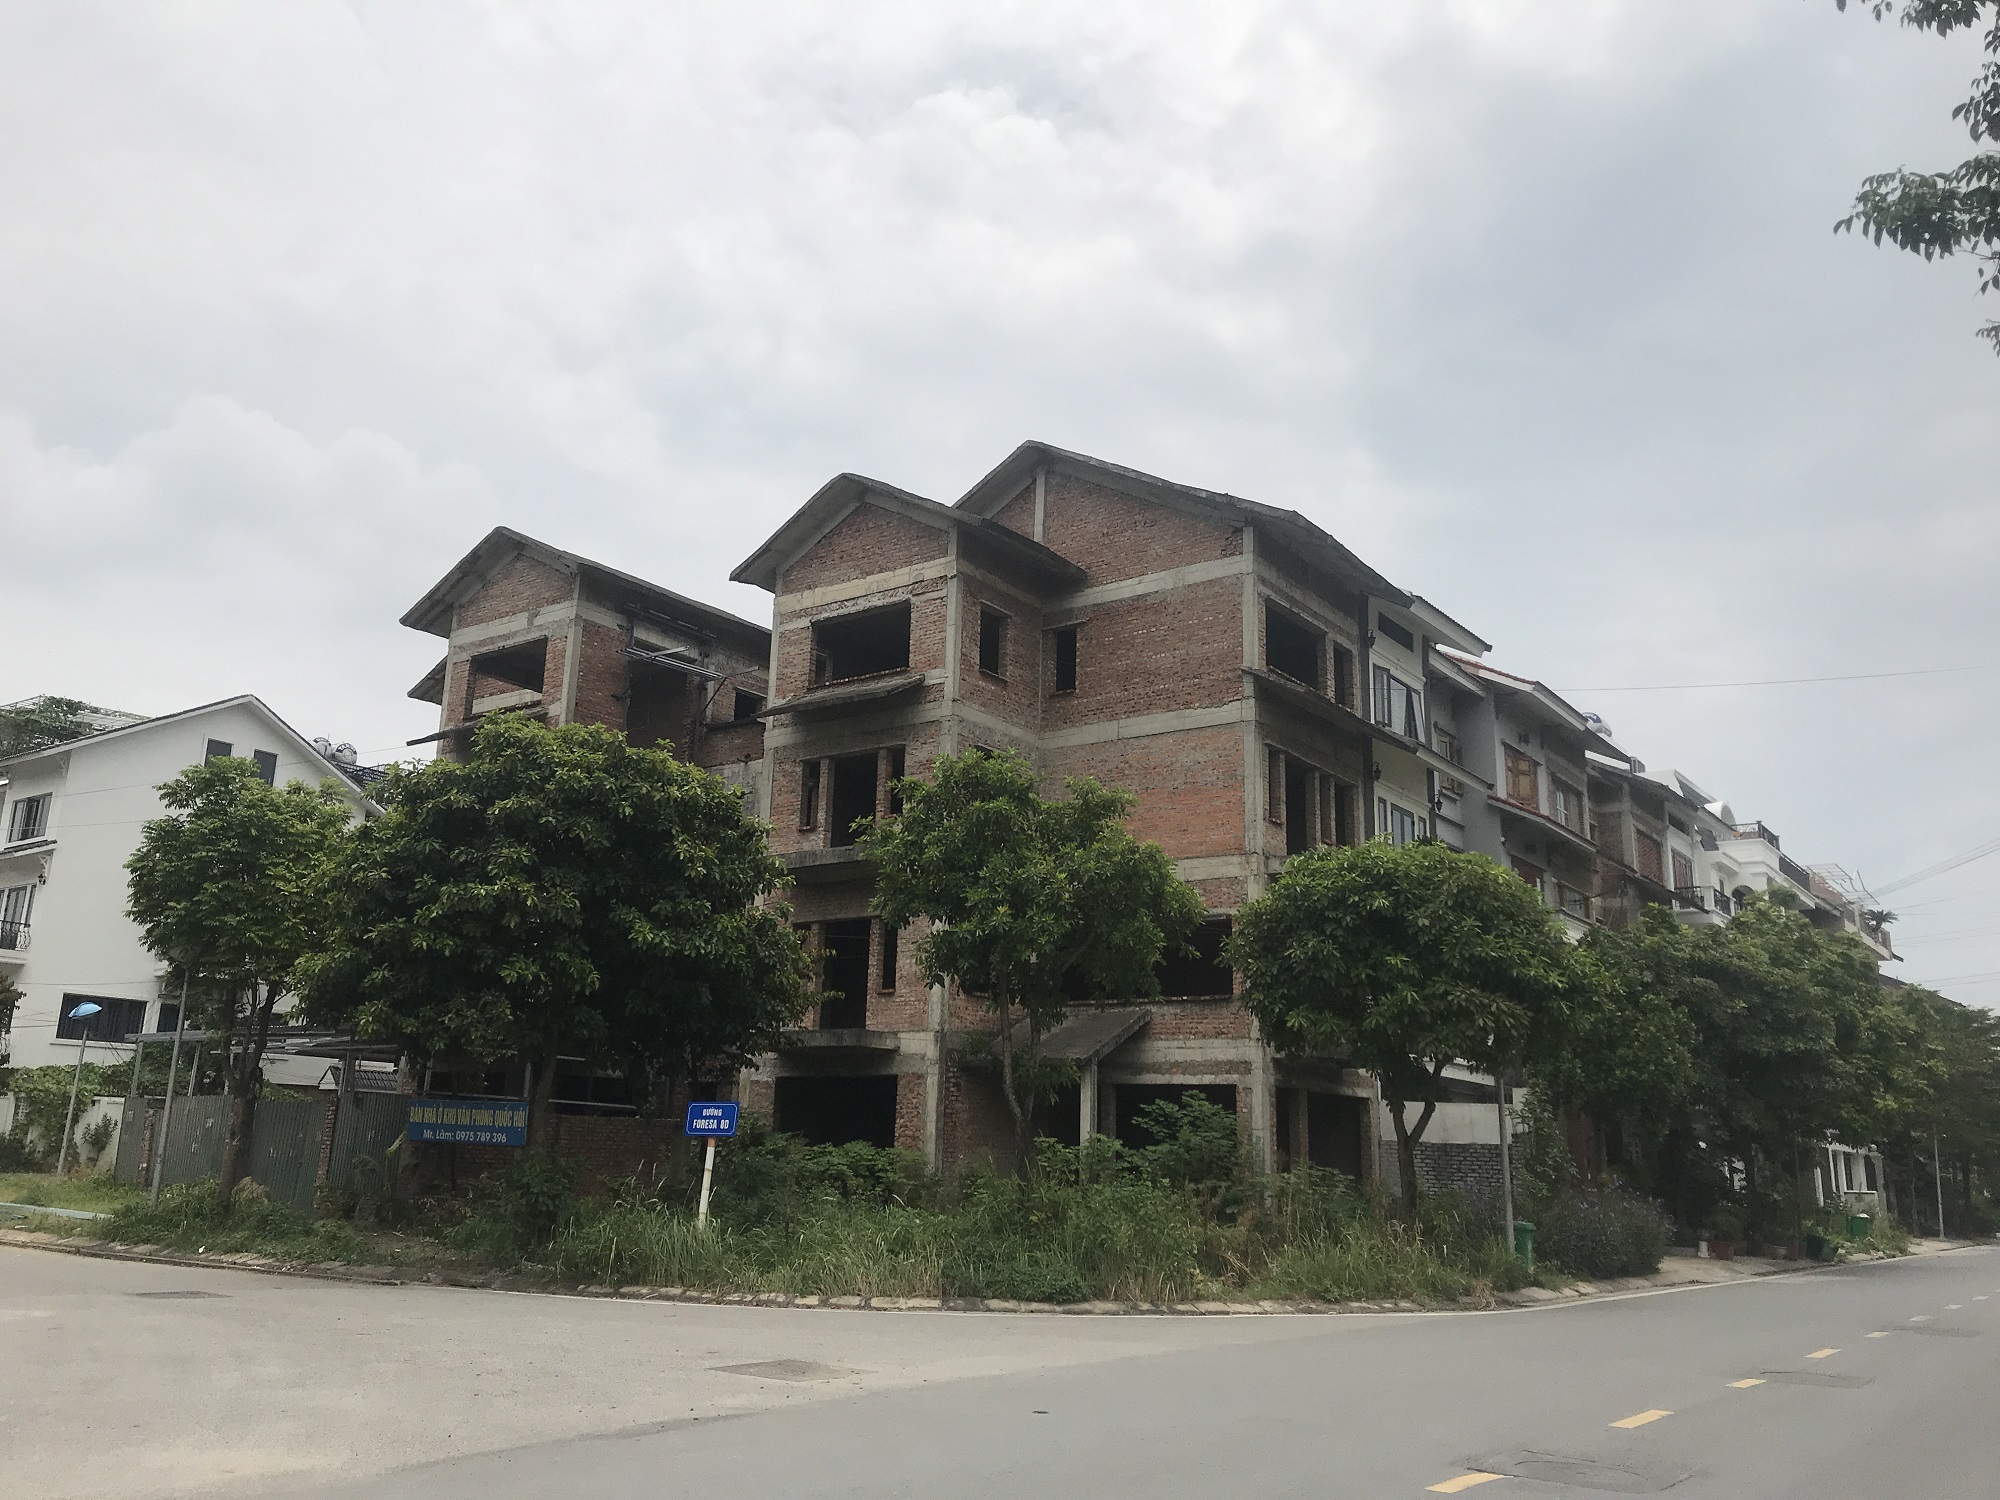 Biệt thự bỏ hoang tại khu đô thị sinh thái Xuân Phương bị hét giá trên trời (Ảnh: Thái Nguyễn)